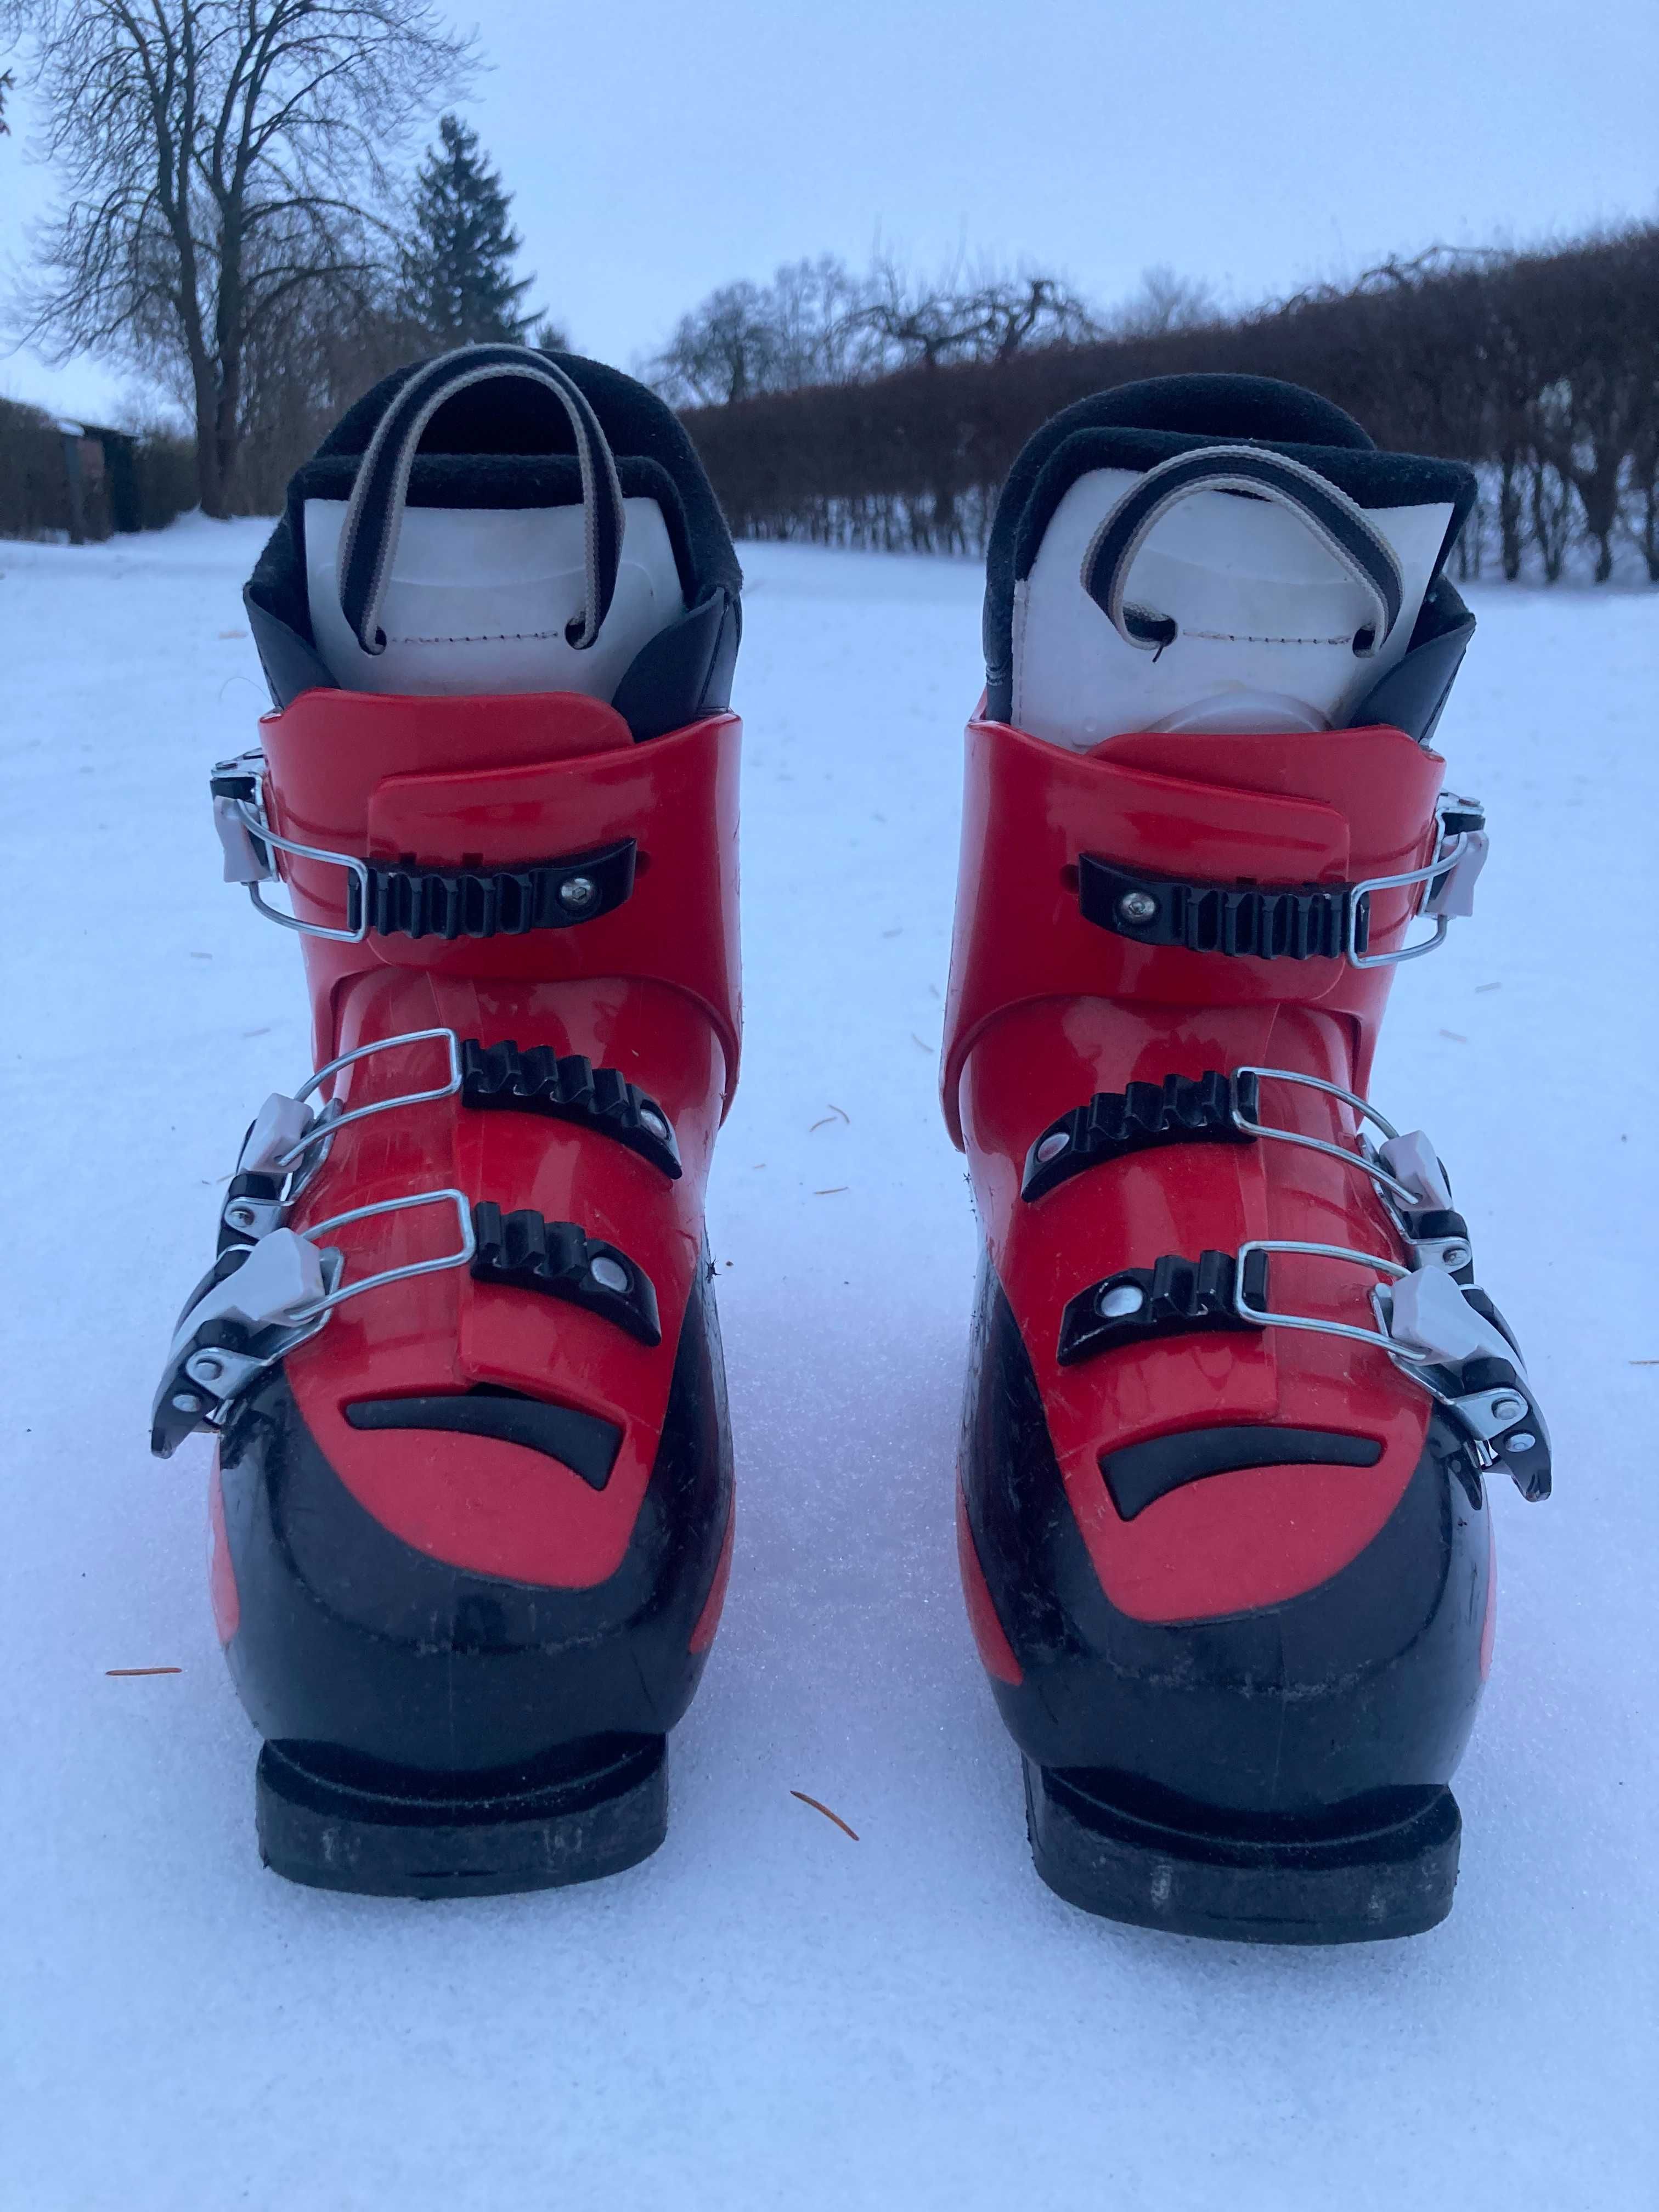 Narty atomic race 90cm + buty narciarskie